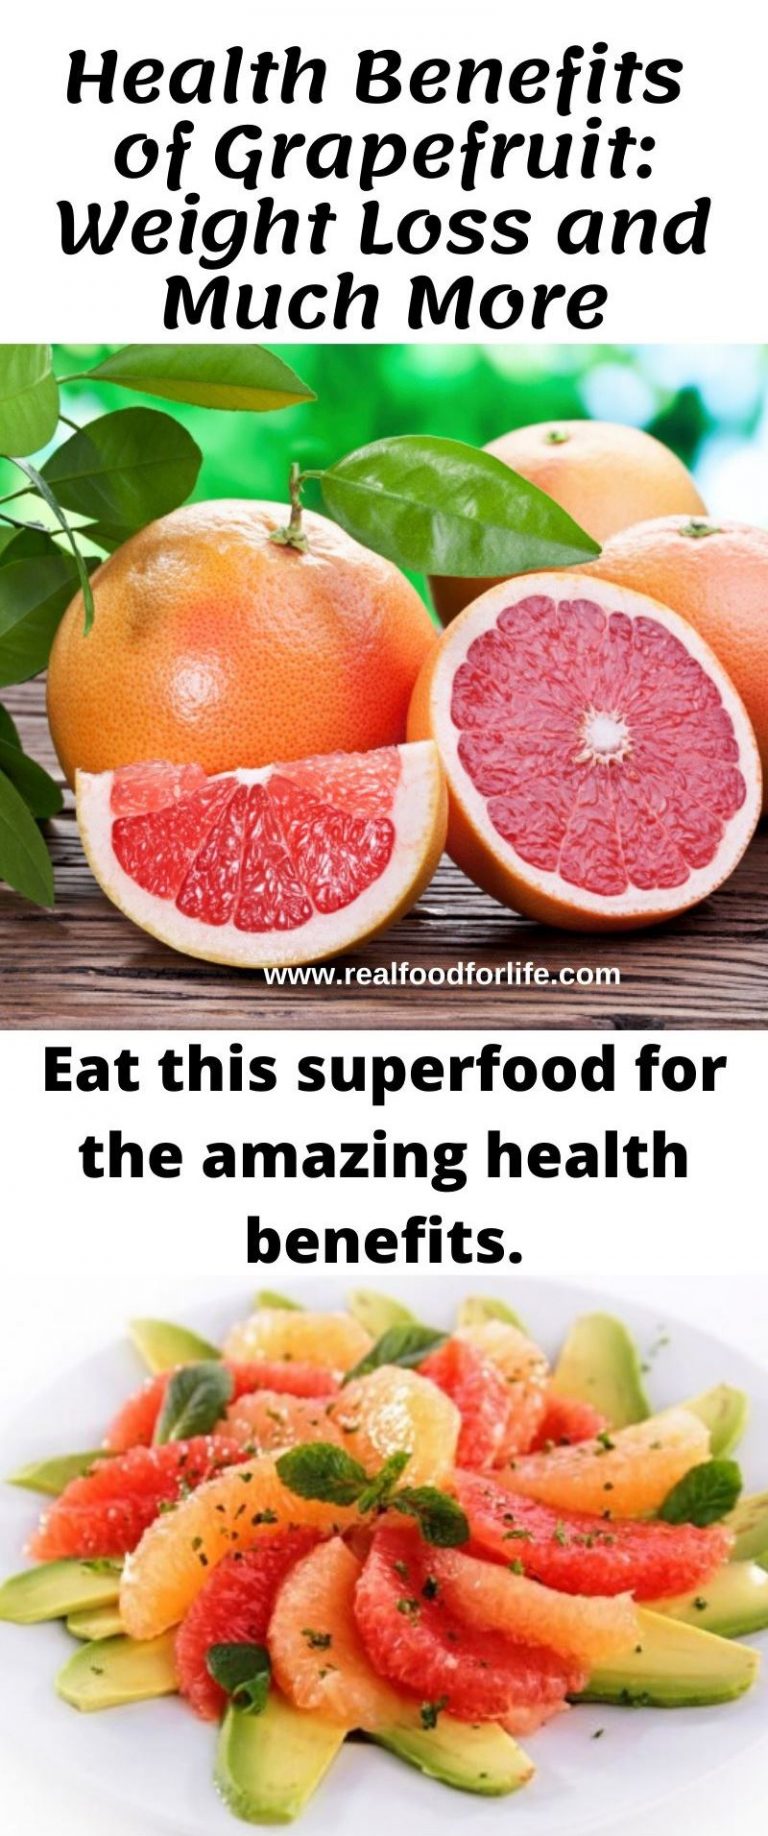 grapefruit calories comparison